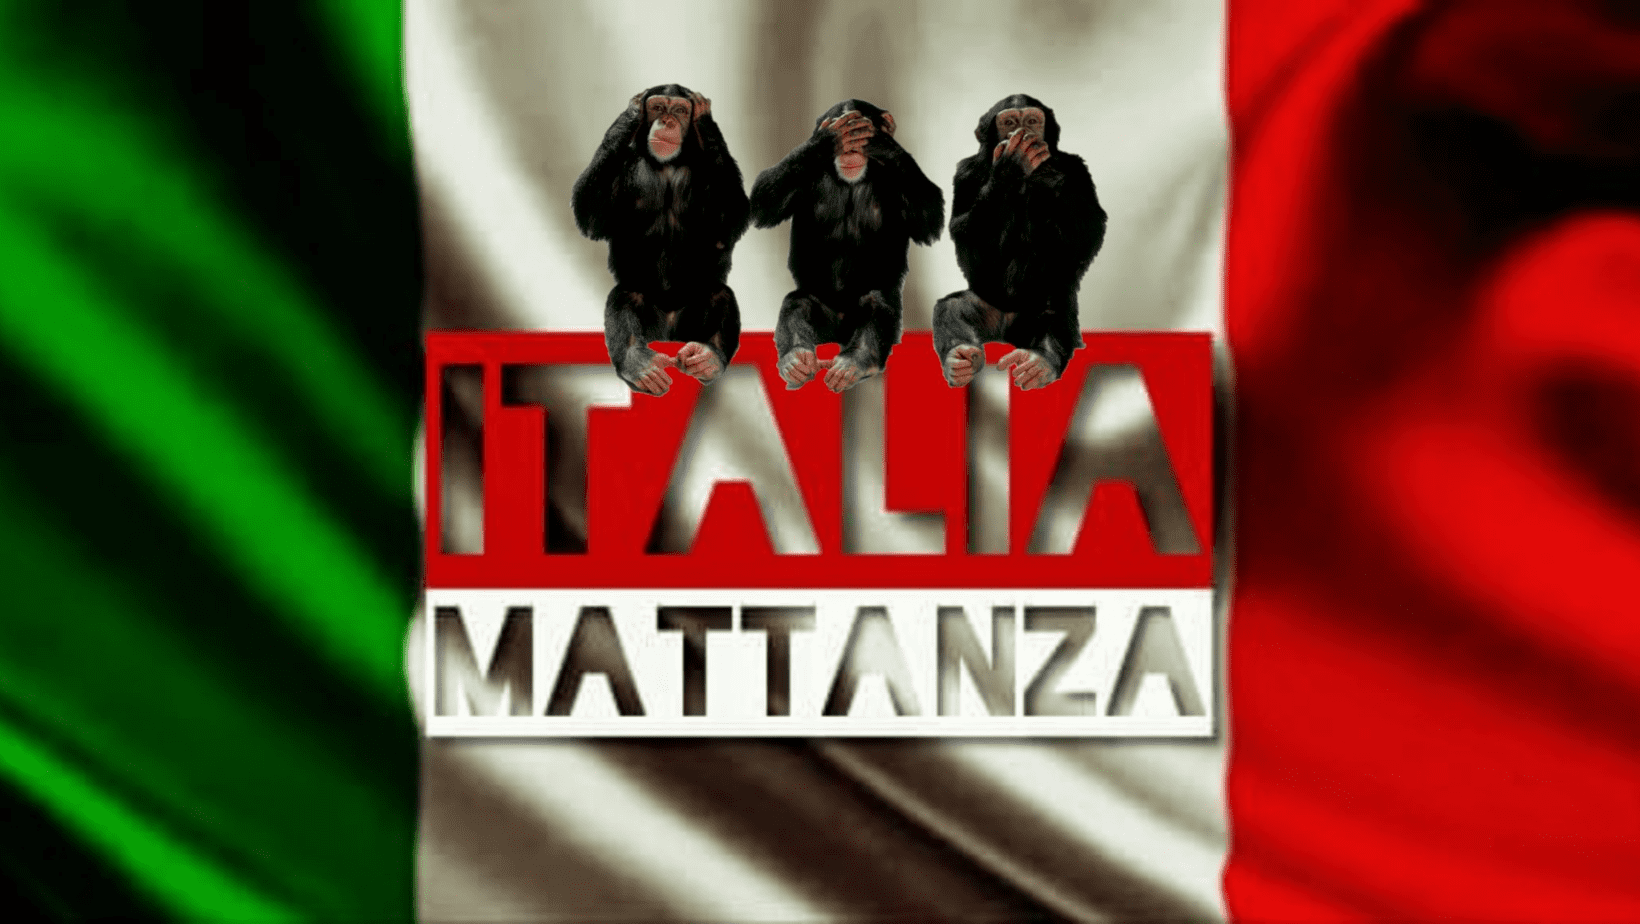 Italia Mattanza
PUBBLICAZIONI INDIPENDENTI ITALIANE